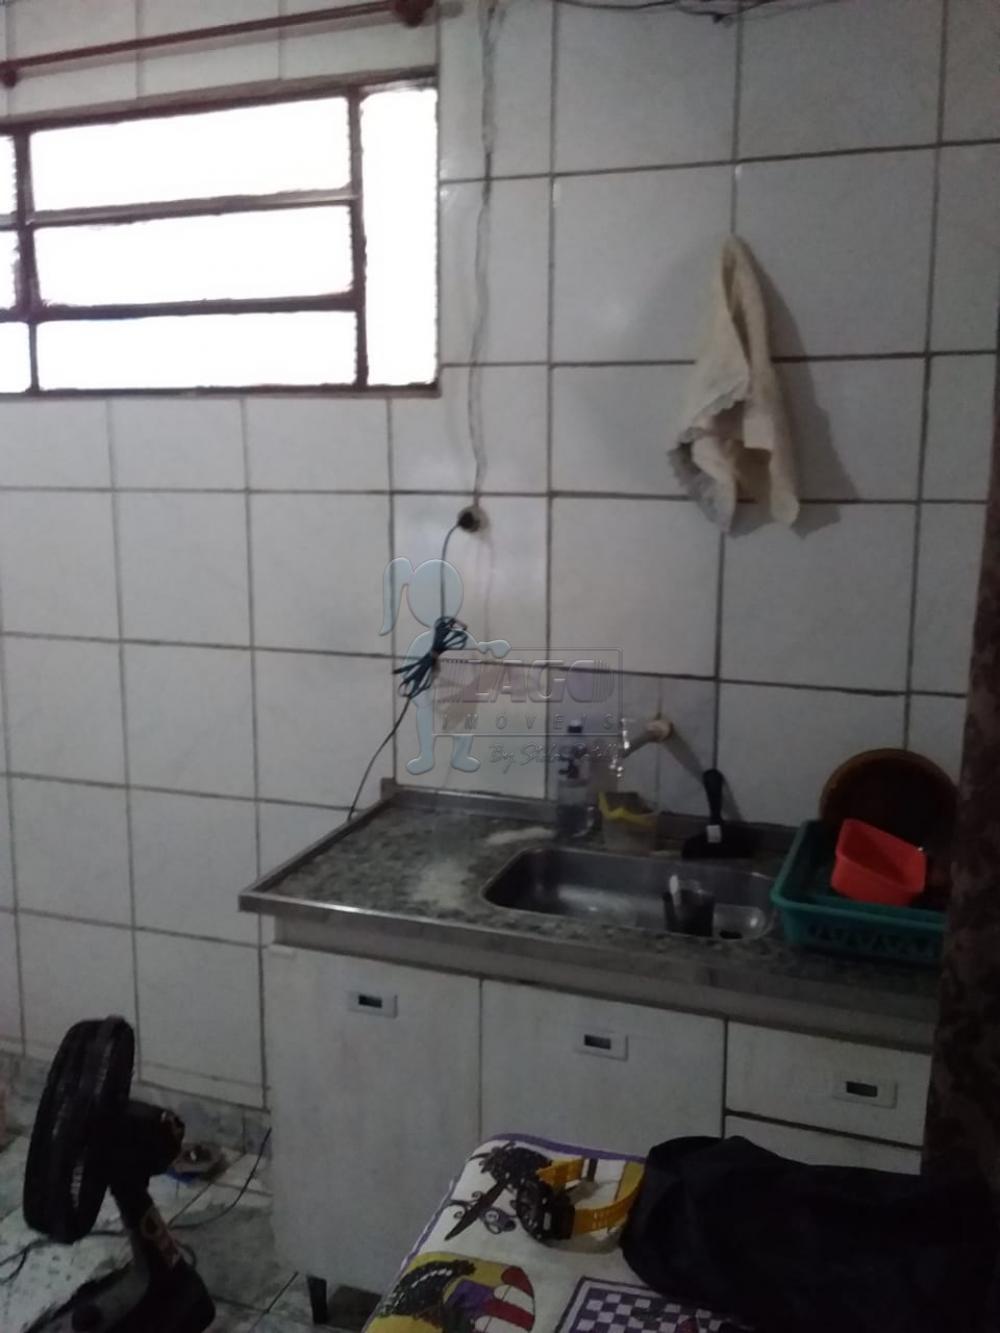 Comprar Casas / Padrão em Ribeirão Preto R$ 200.000,00 - Foto 16